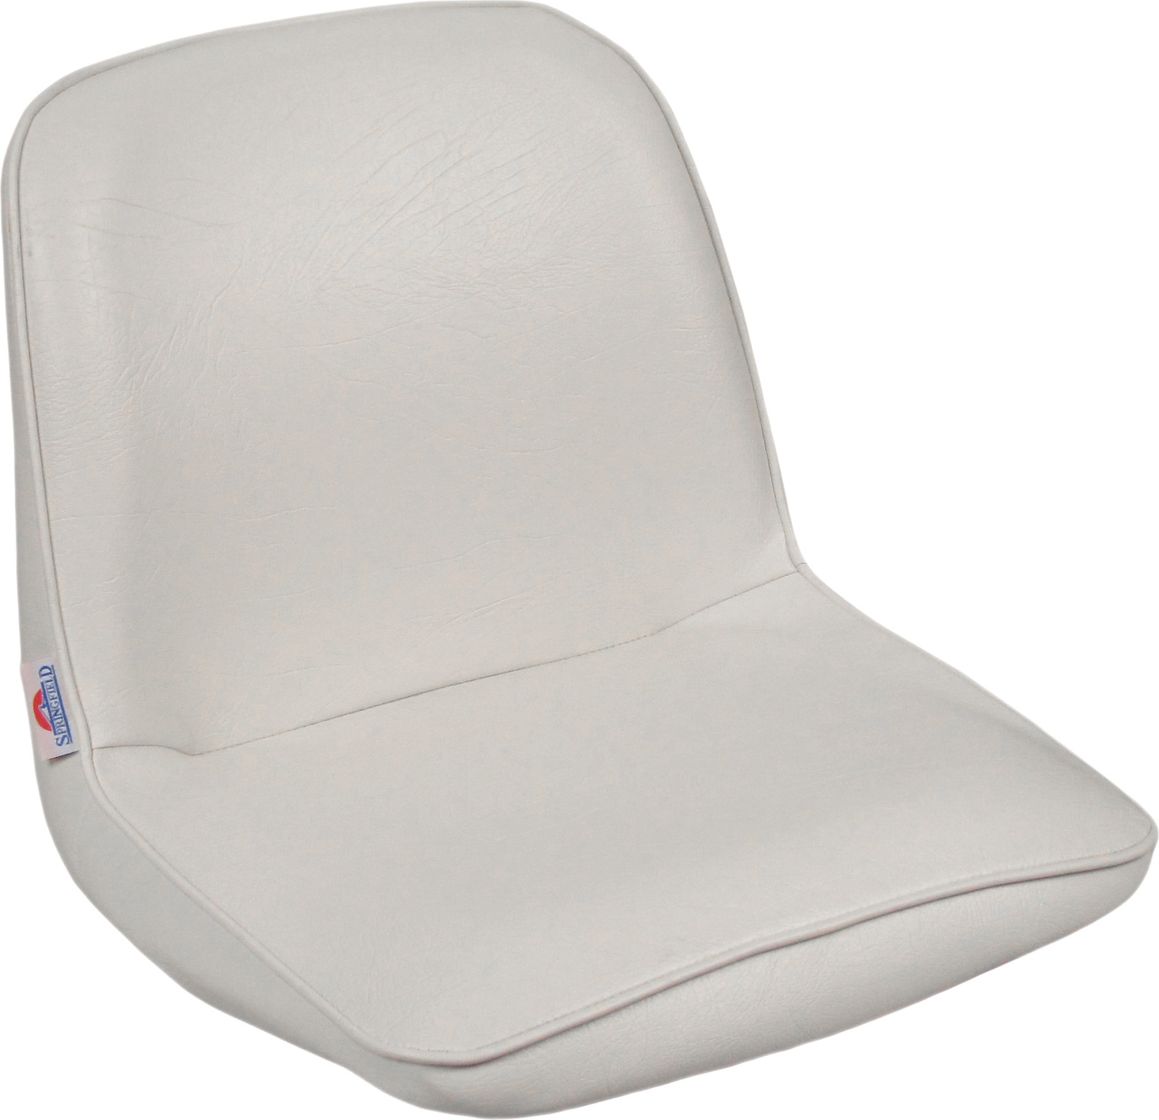 Кресло FIRST MATE мягкое, материал белый винил (упаковка из 6 шт.) 1001006C_pkg_6 кресло складное мягкое traveler обивка камуфляжная ткань duck blind упаковка из 2 шт 1061108c pkg 2